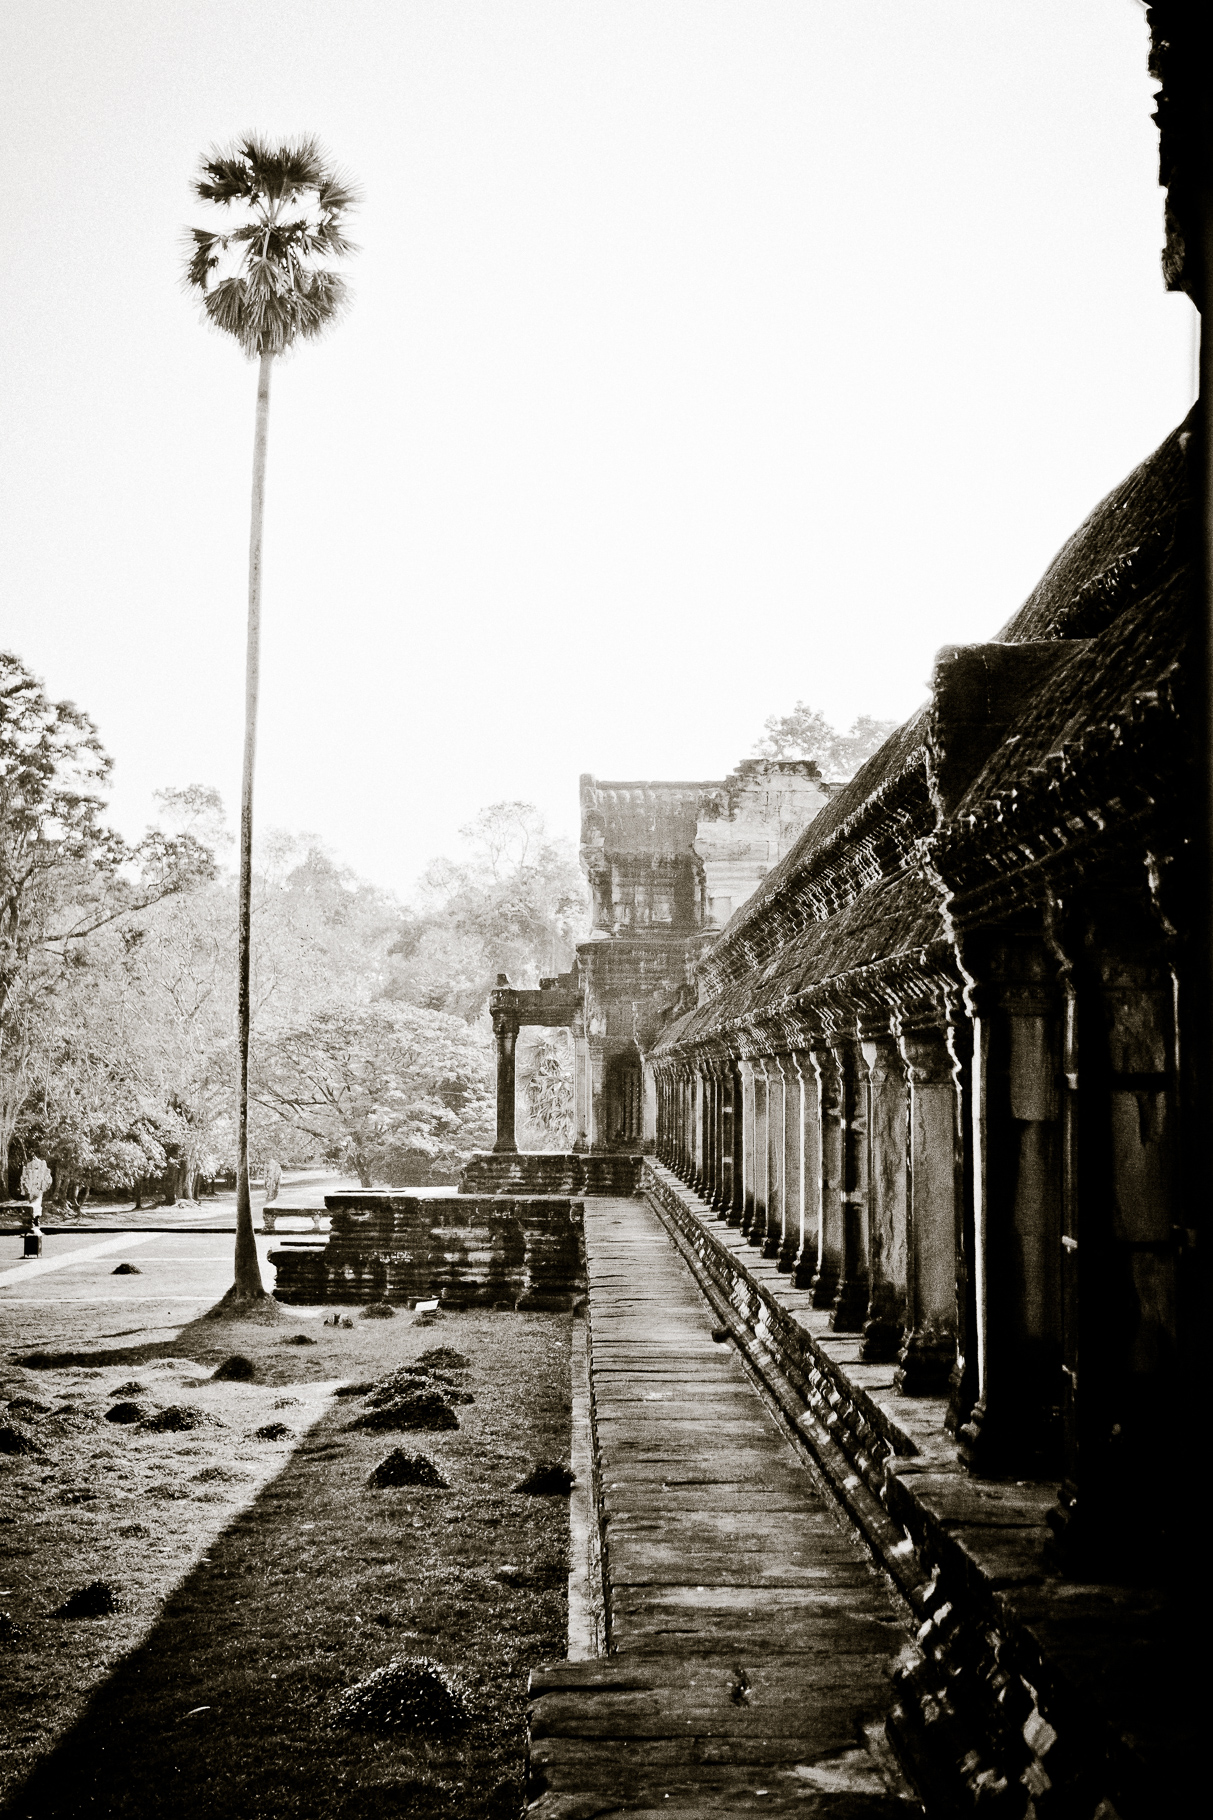 Angkor Wat (North) with Palmtree. Angkor Wat, Cambodia. January 2012